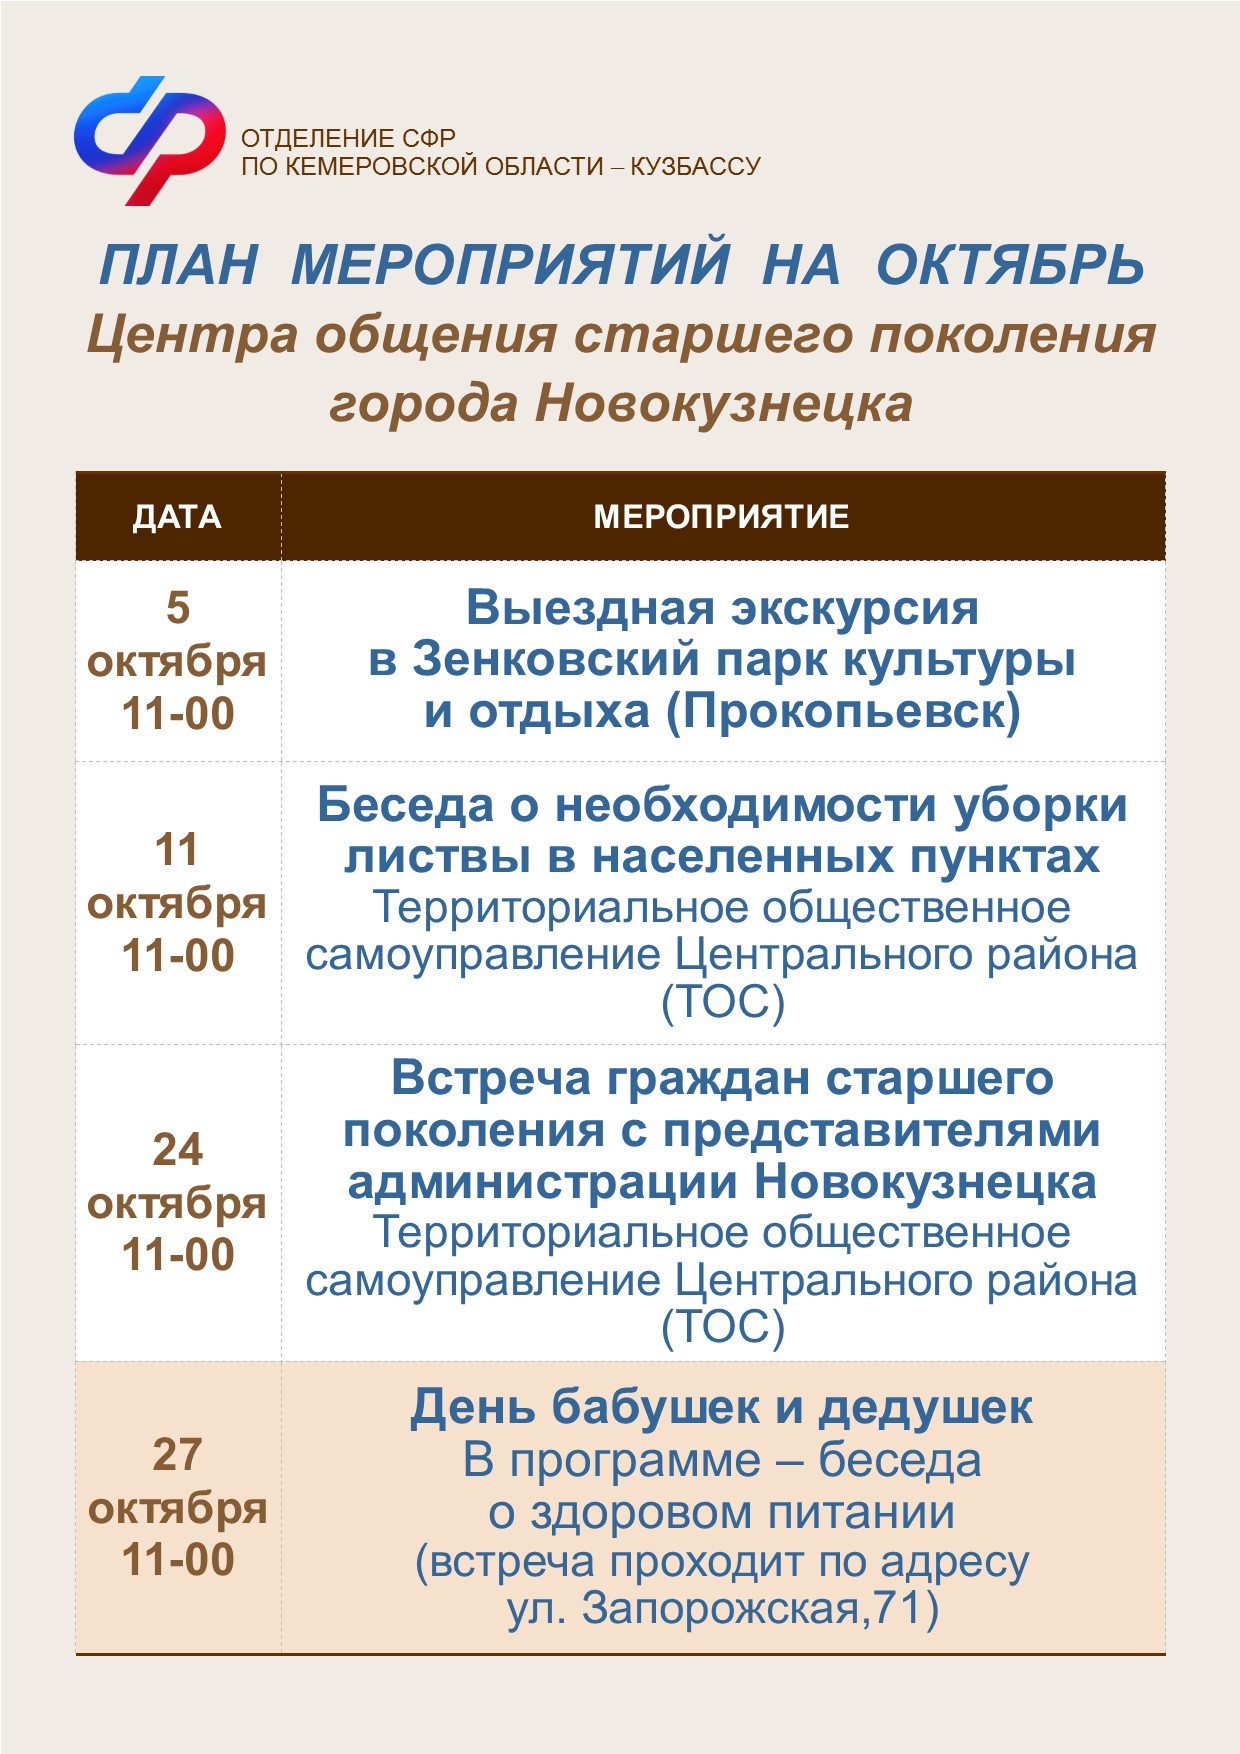 План мероприятий на октябрь центра общения старшего поколения г. Новокузнецк